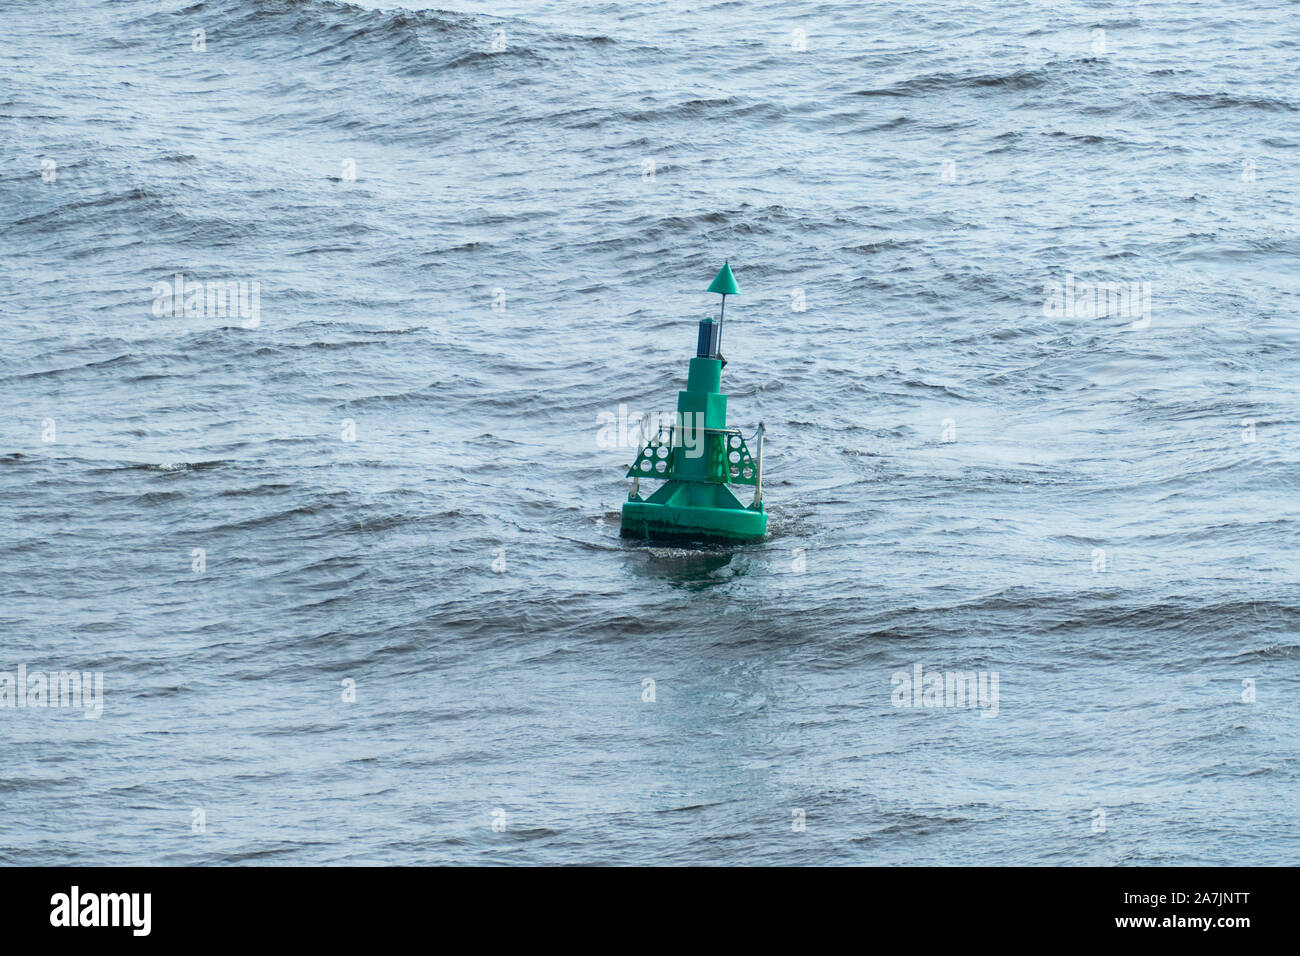 Boje, grüne Markierung für Schiffe in der Nordsee Stock Photo